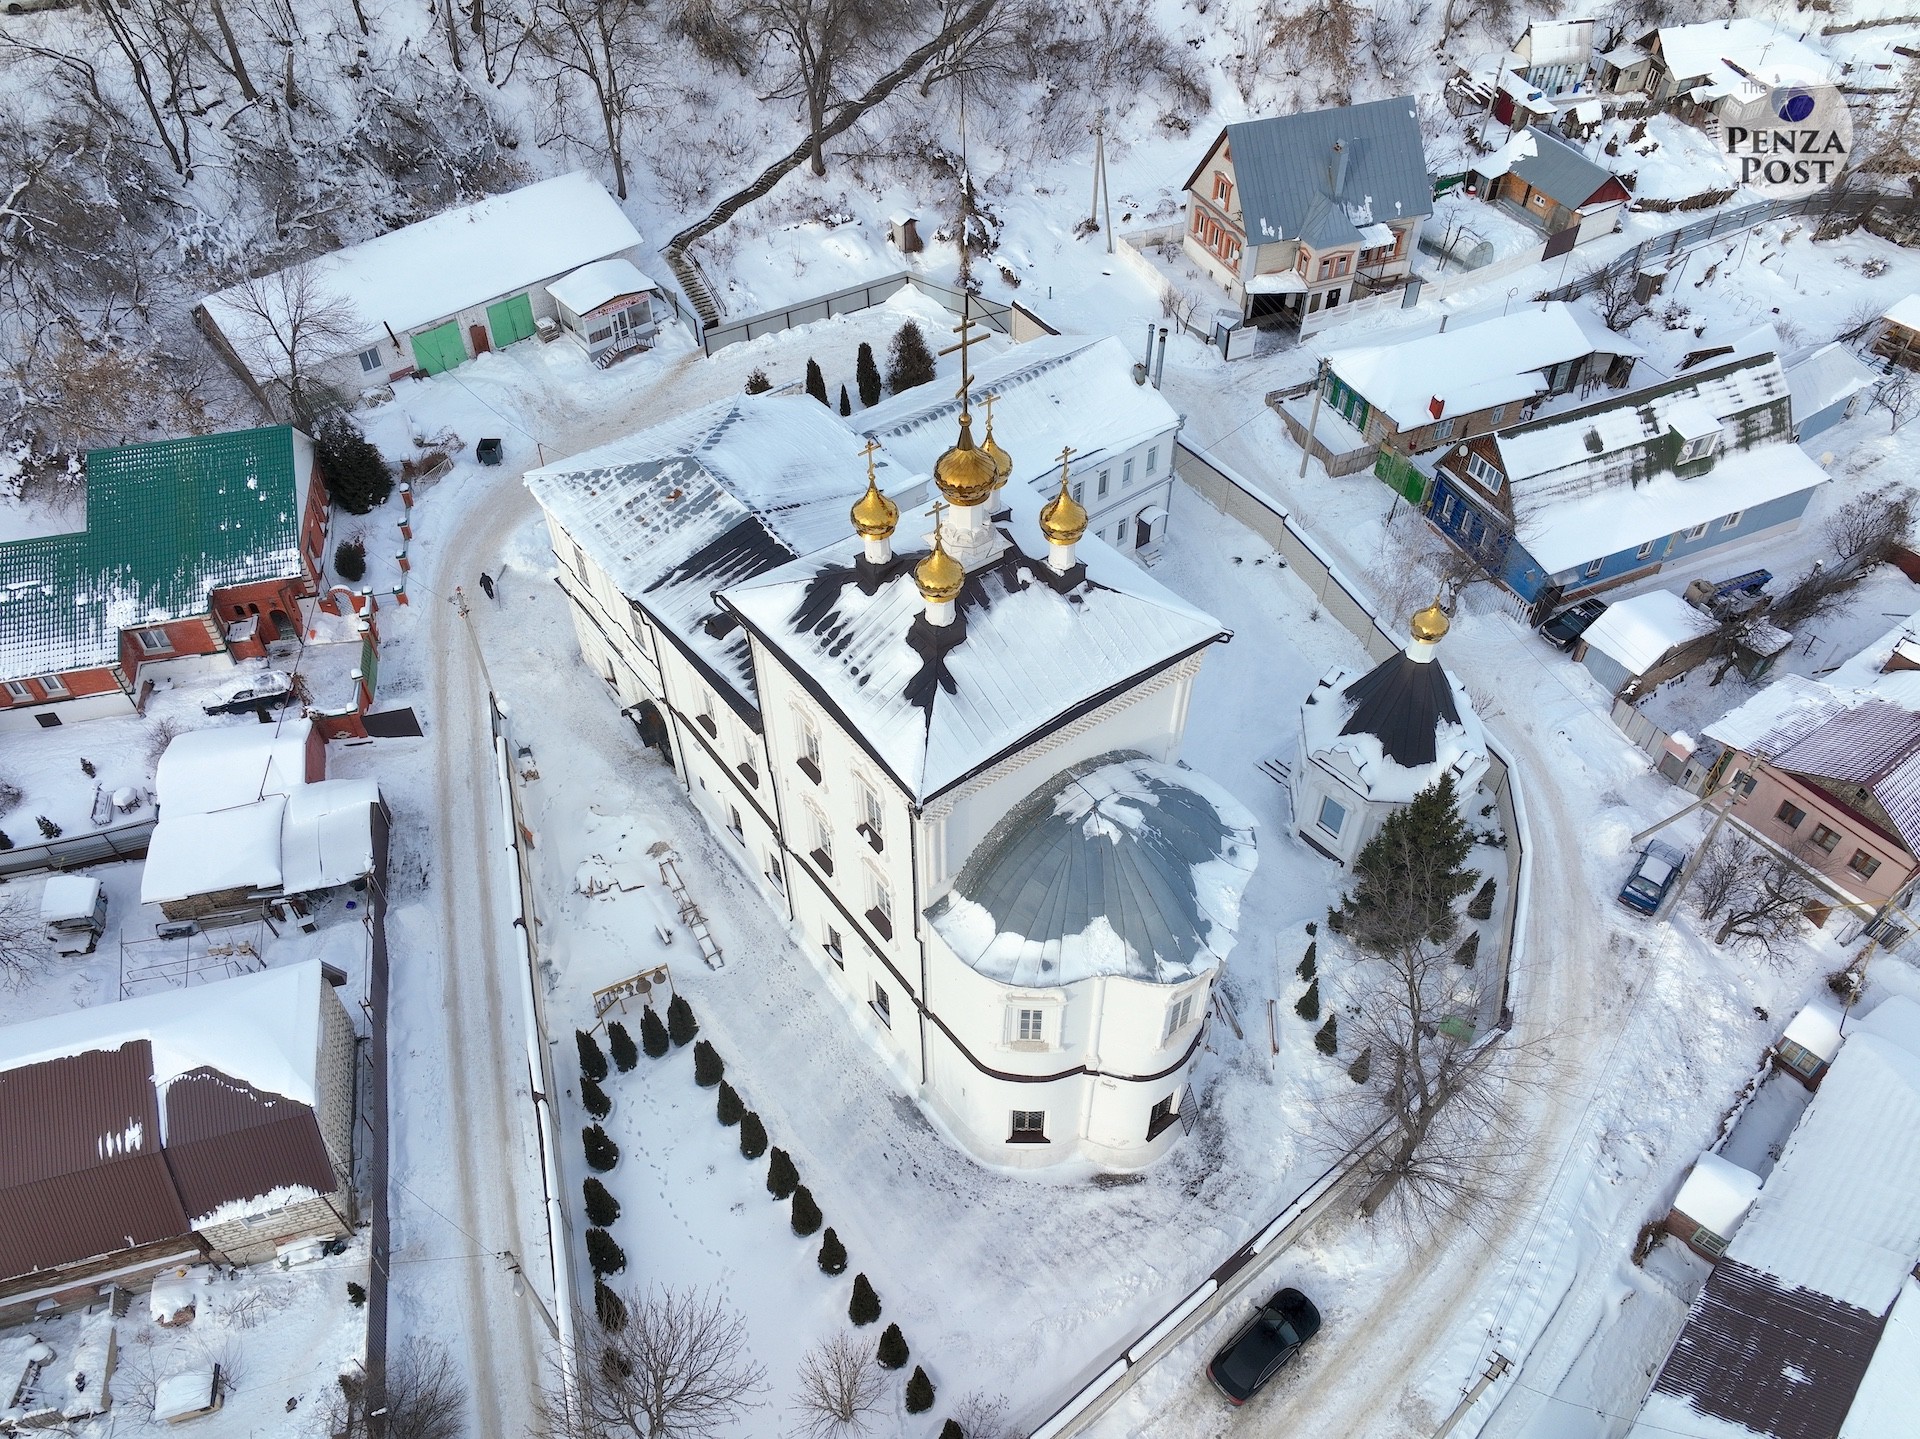 Спасо-Преображенский мужской монастырь - одна из самых старинных обителей в Пензе. Аэрофотография от The Penza Post